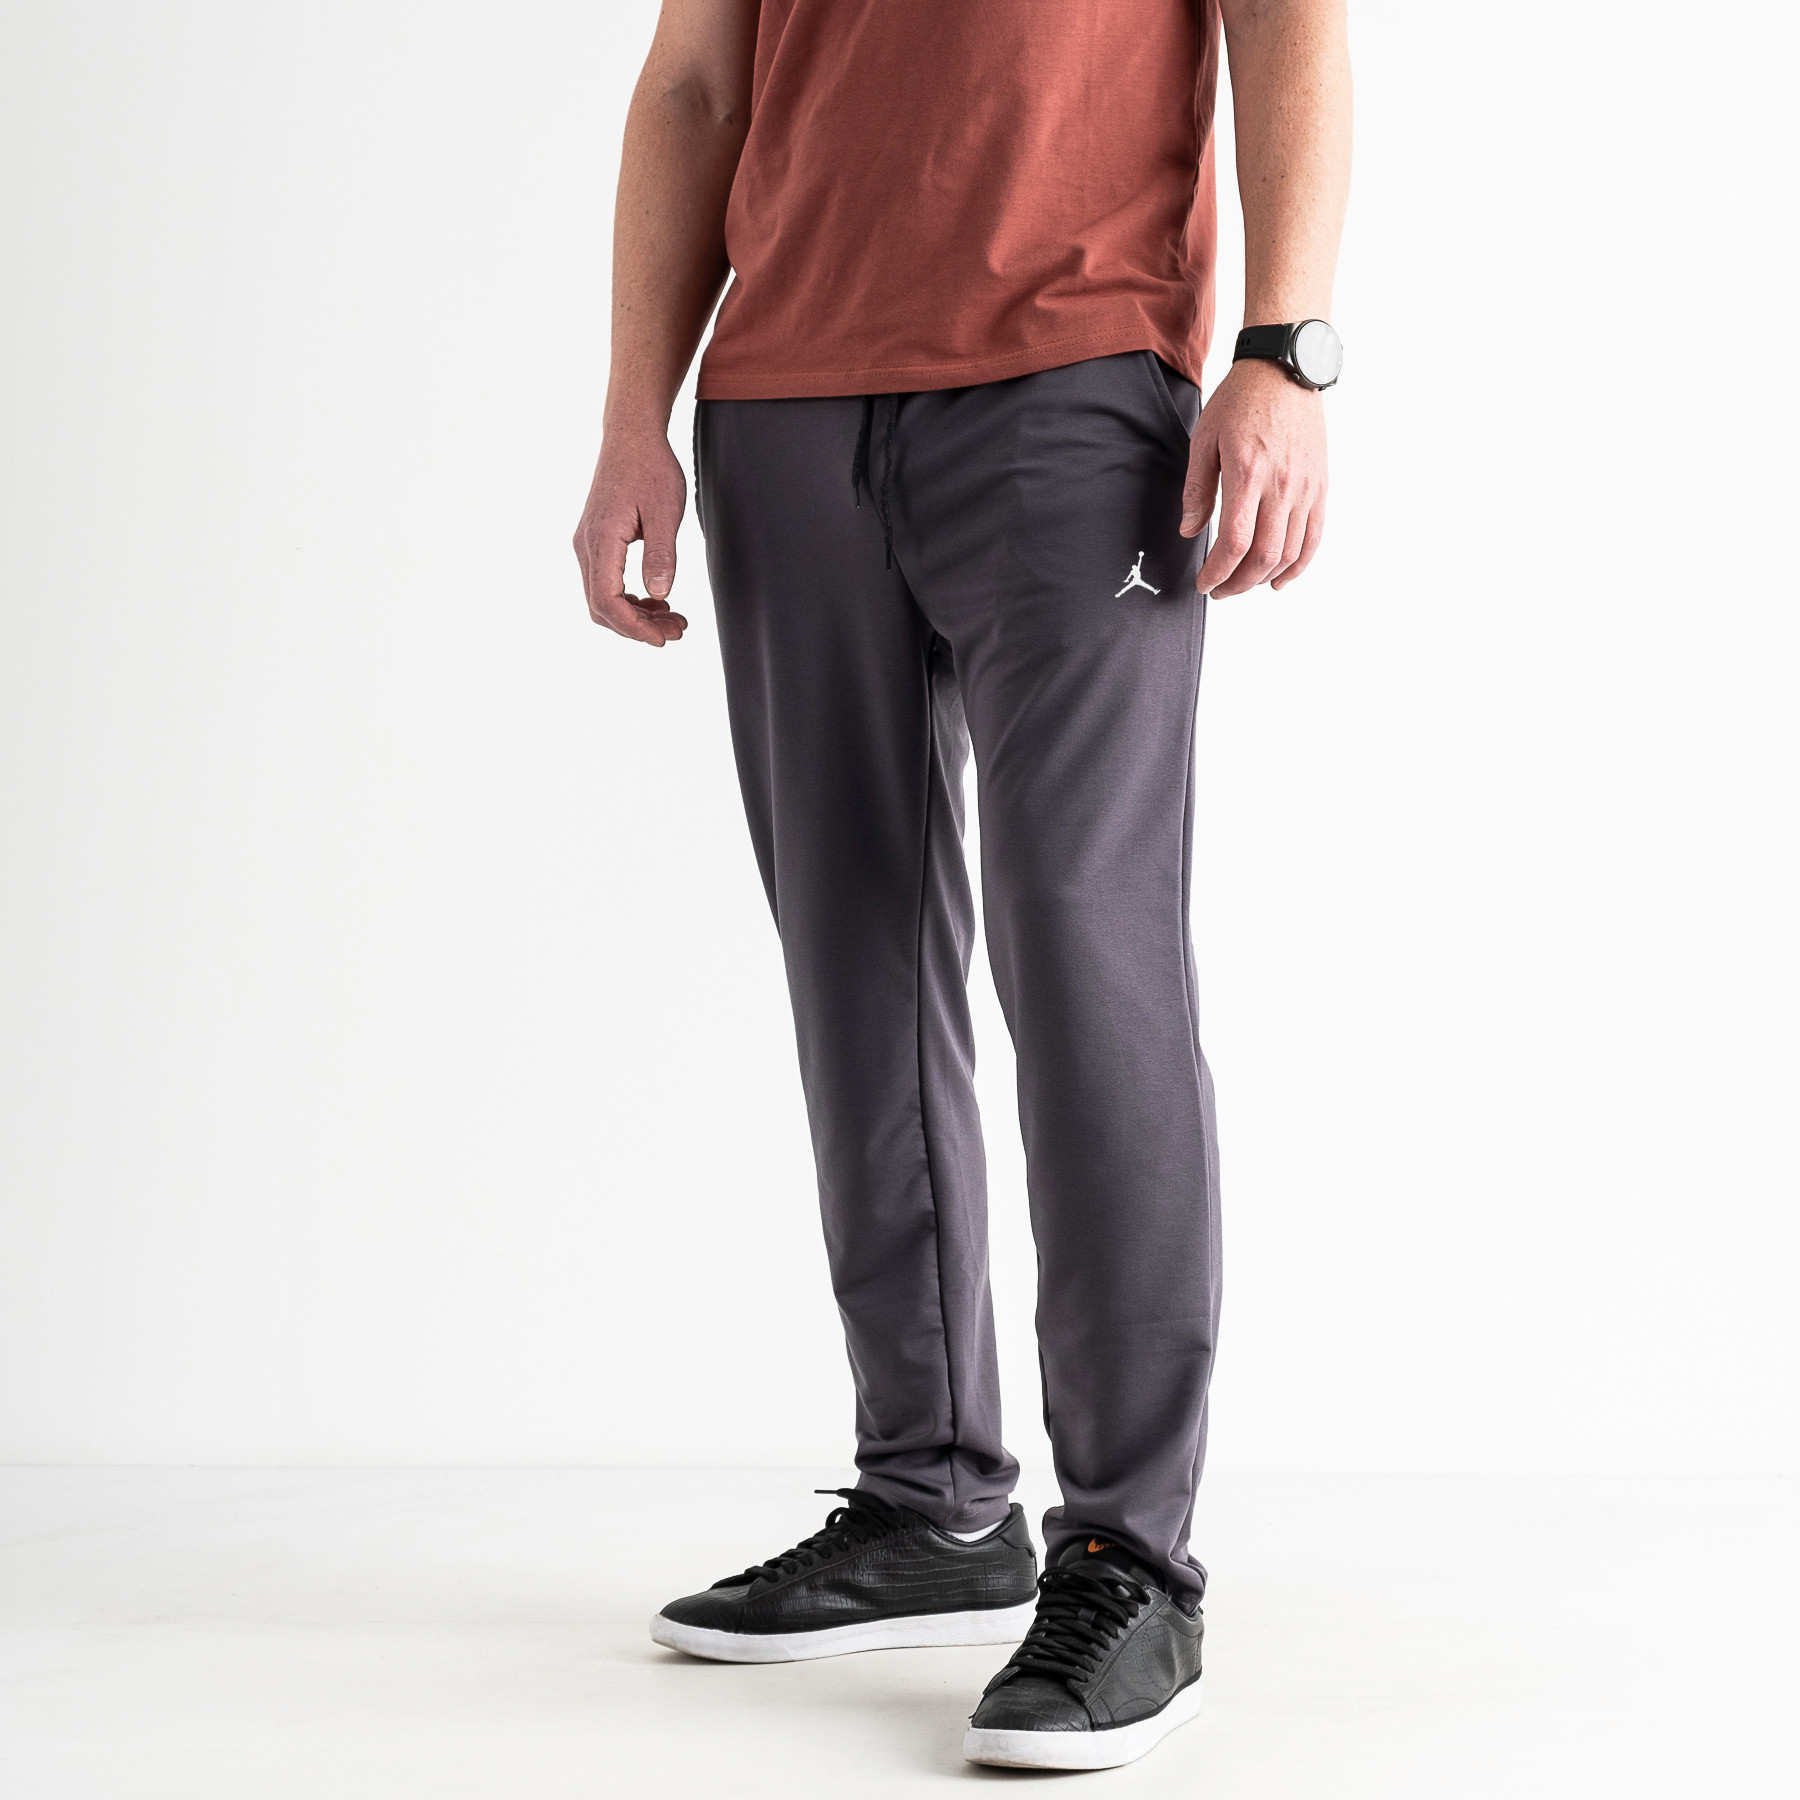 1672-2 ГРАФИТ Yola спортивные штаны мужские из двунитки ( 4 ед. размеры: M.L.XL.XXL)